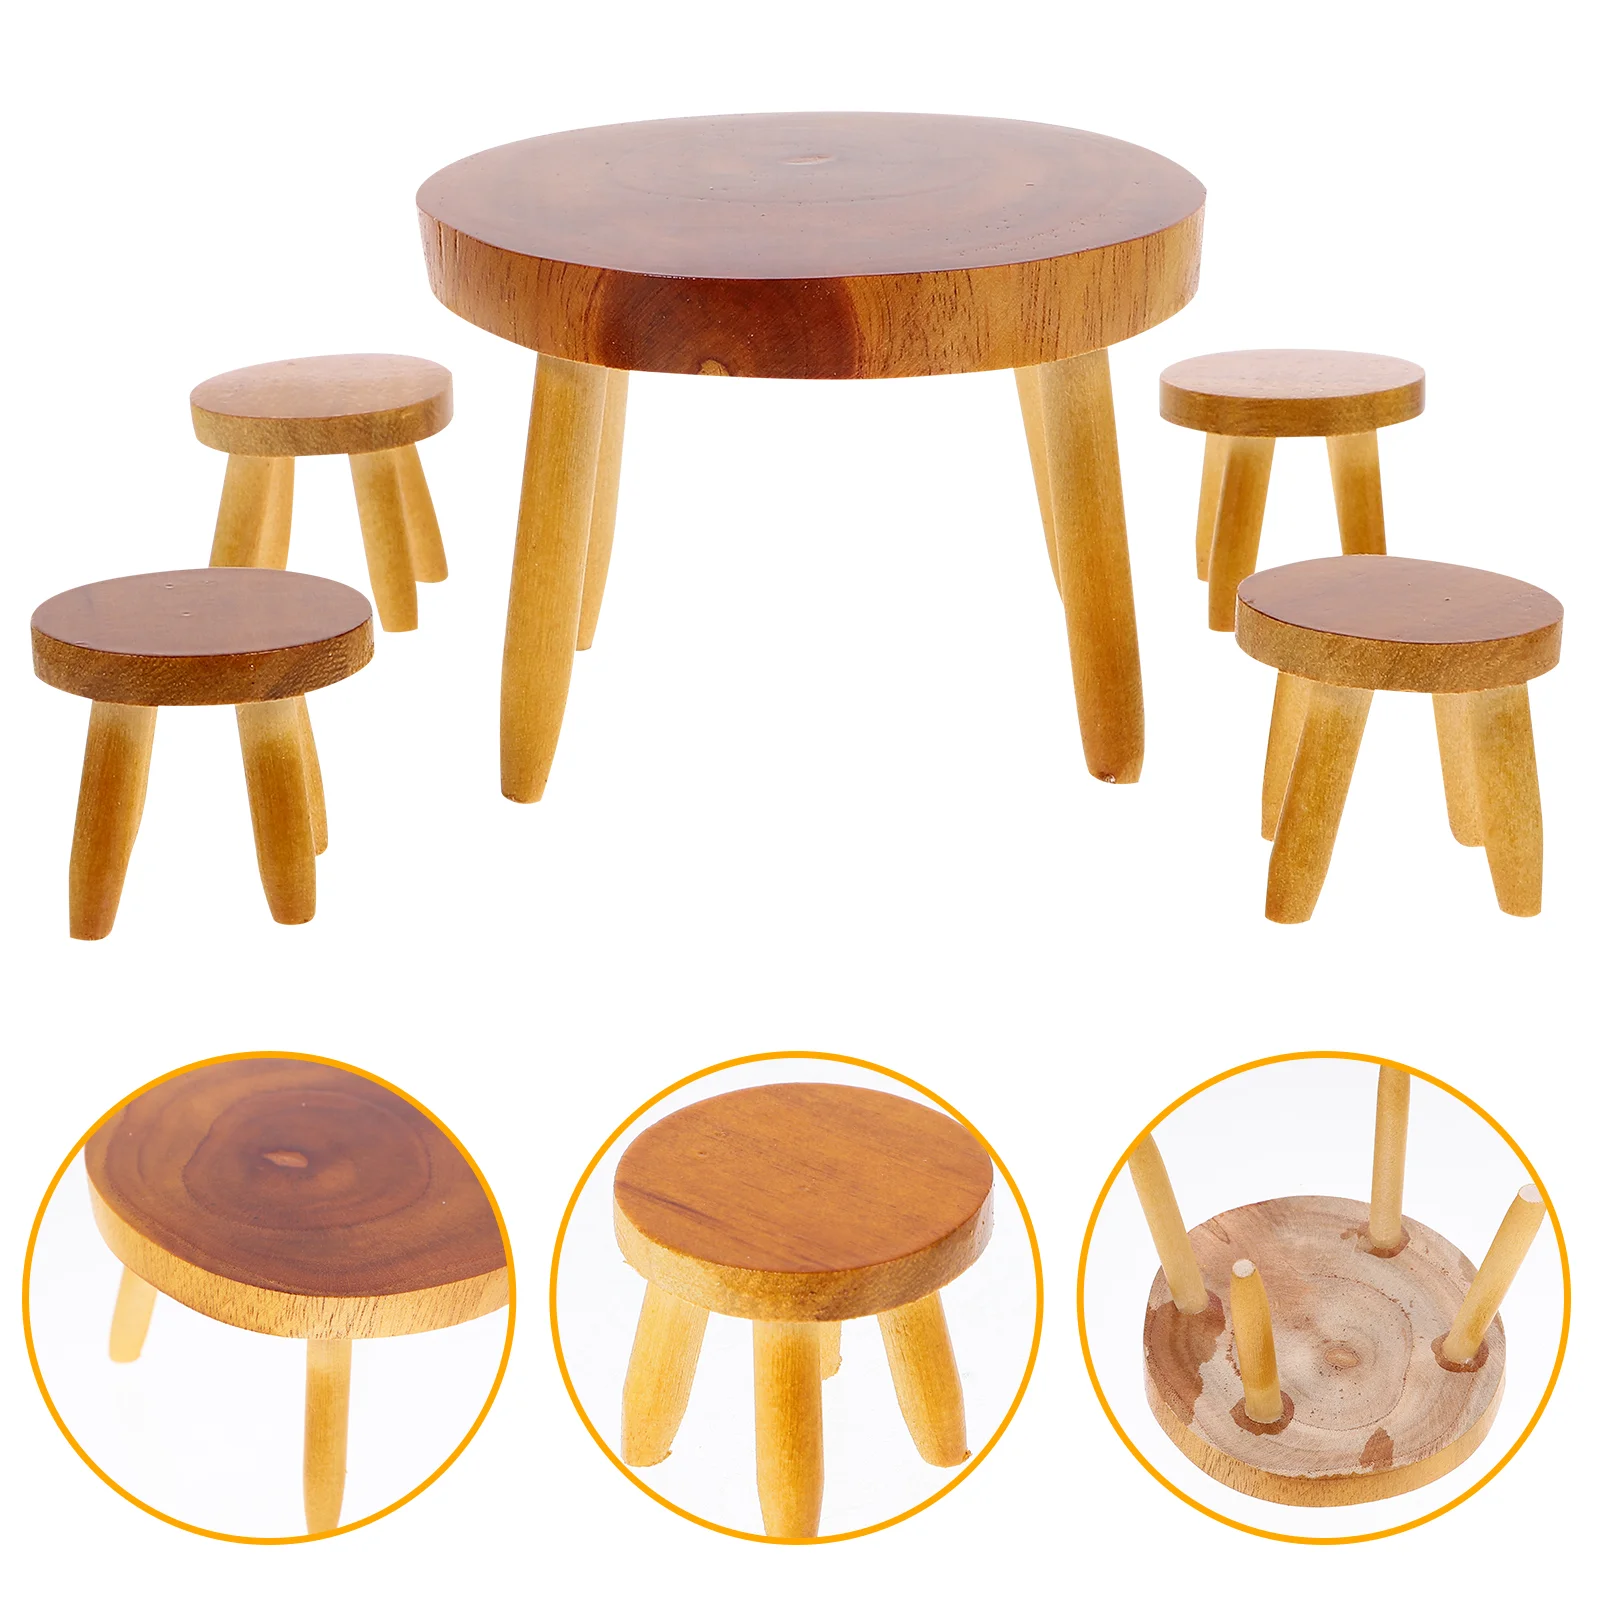 

Настольные стулья для кукольного домика, аксессуары, модель мебели, миниатюрный маленький деревянный обеденный стол